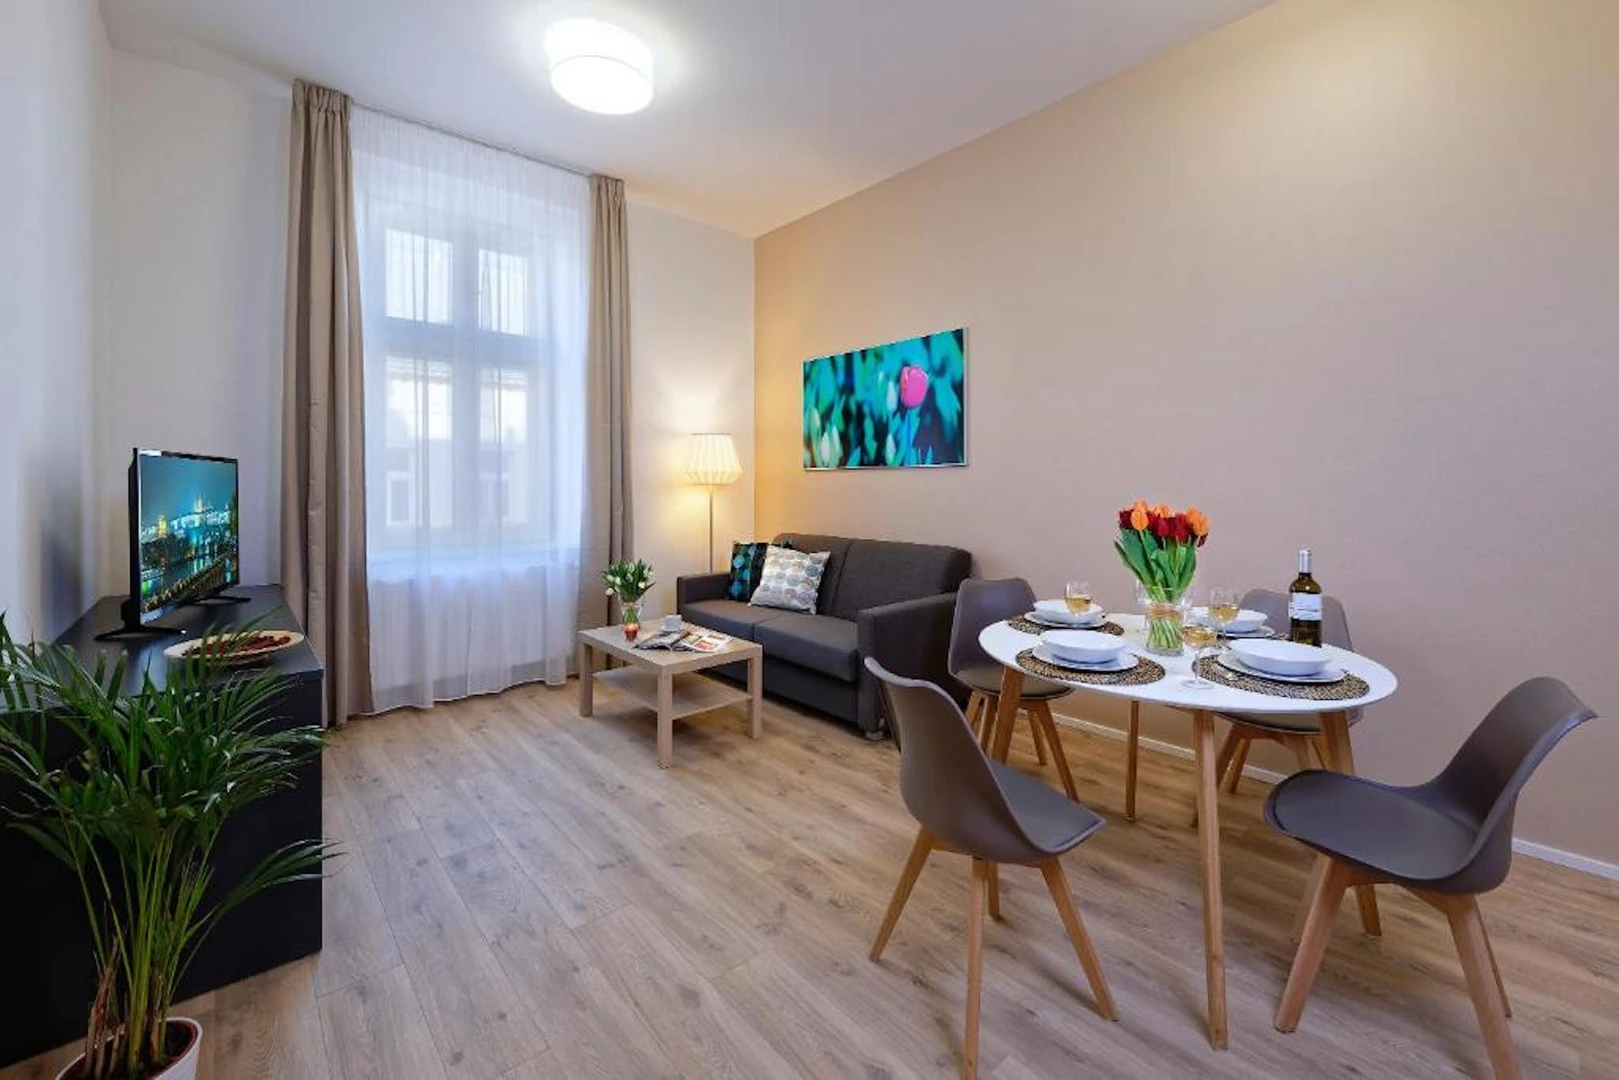 Alojamento com 3 quartos em Praga